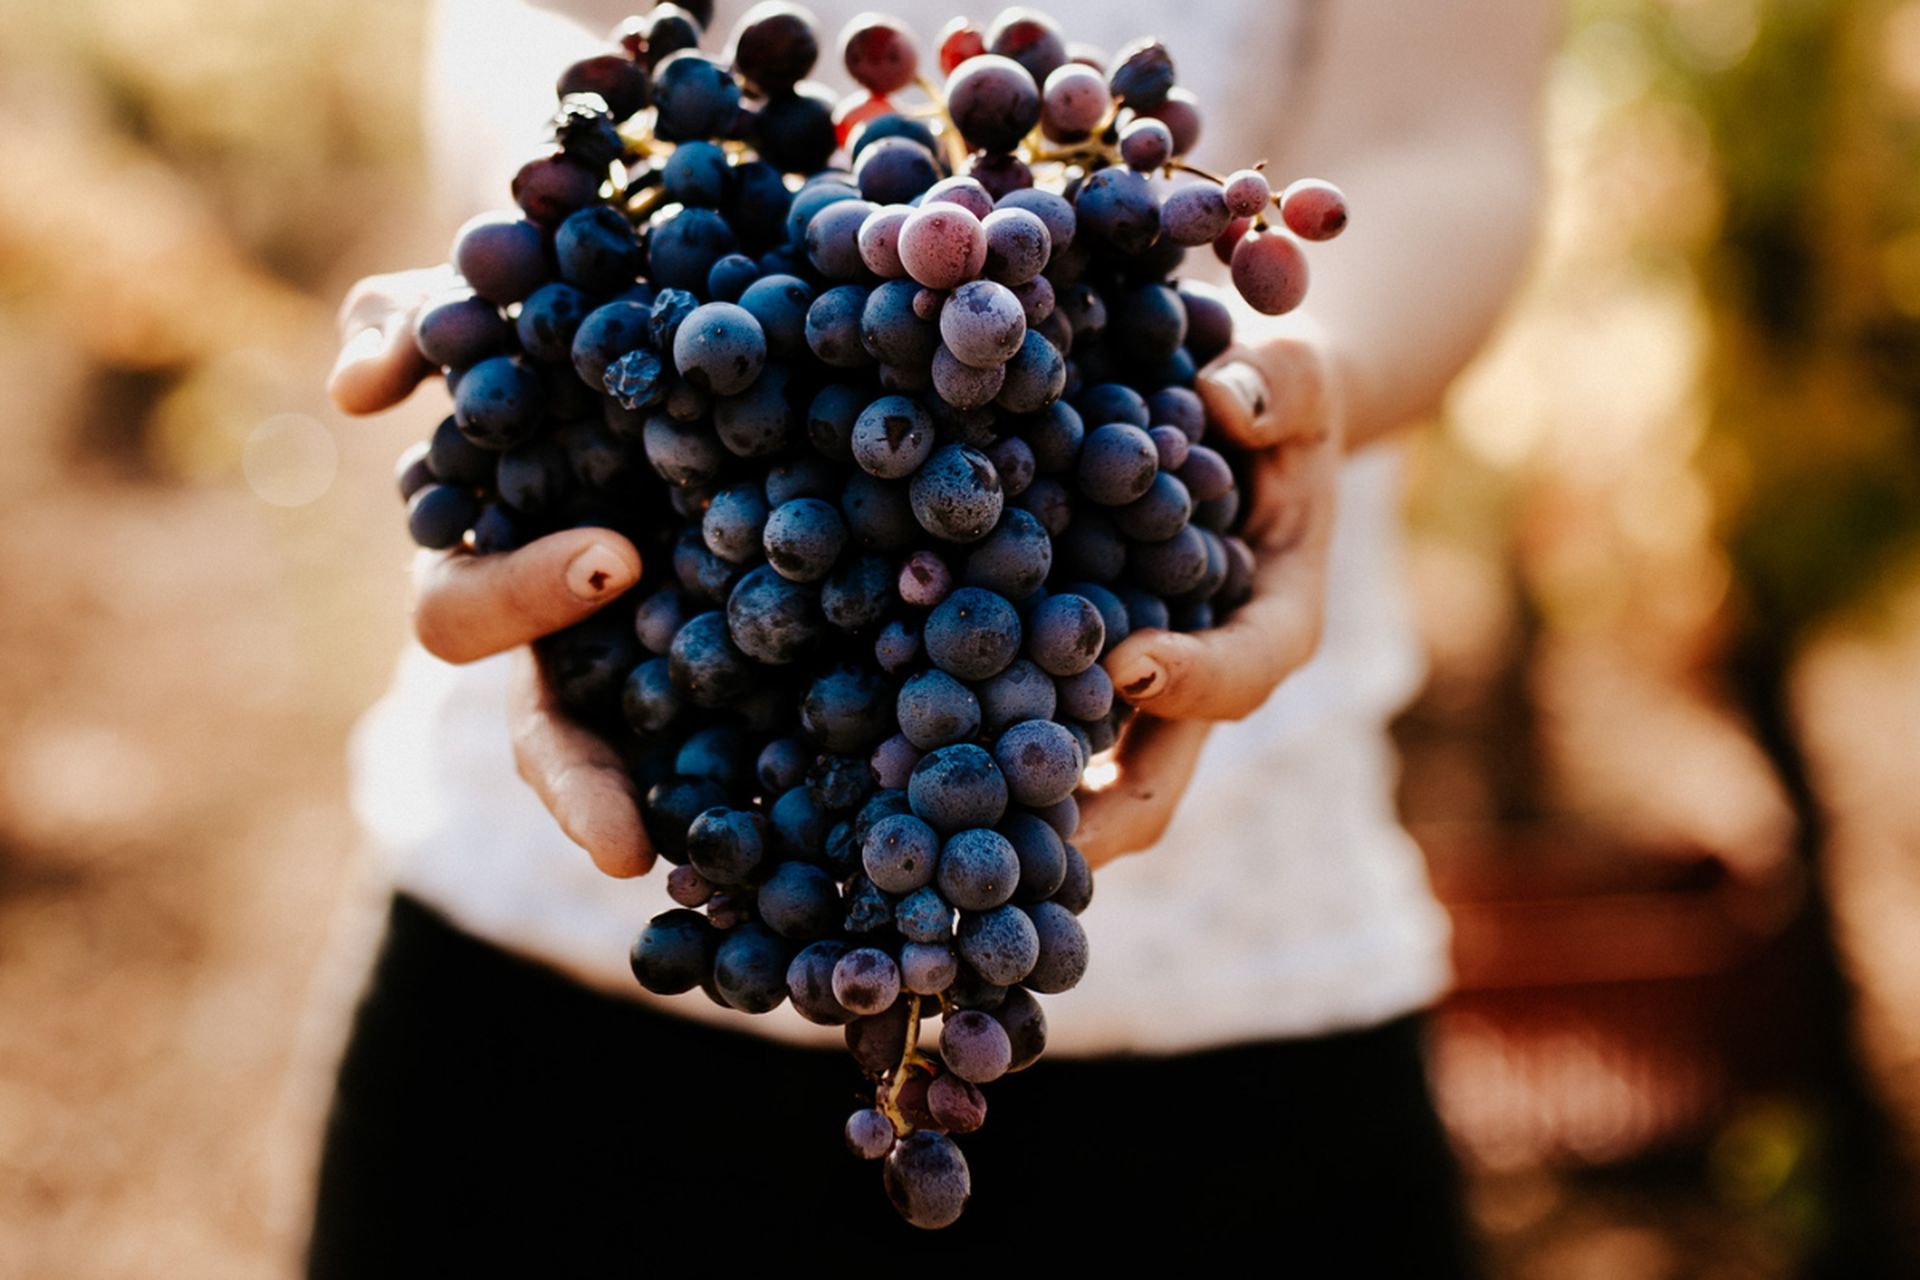 Une femme porte dans ses mains une belle grappe de raisins noirs fraîchement cueillis lors de la vendange